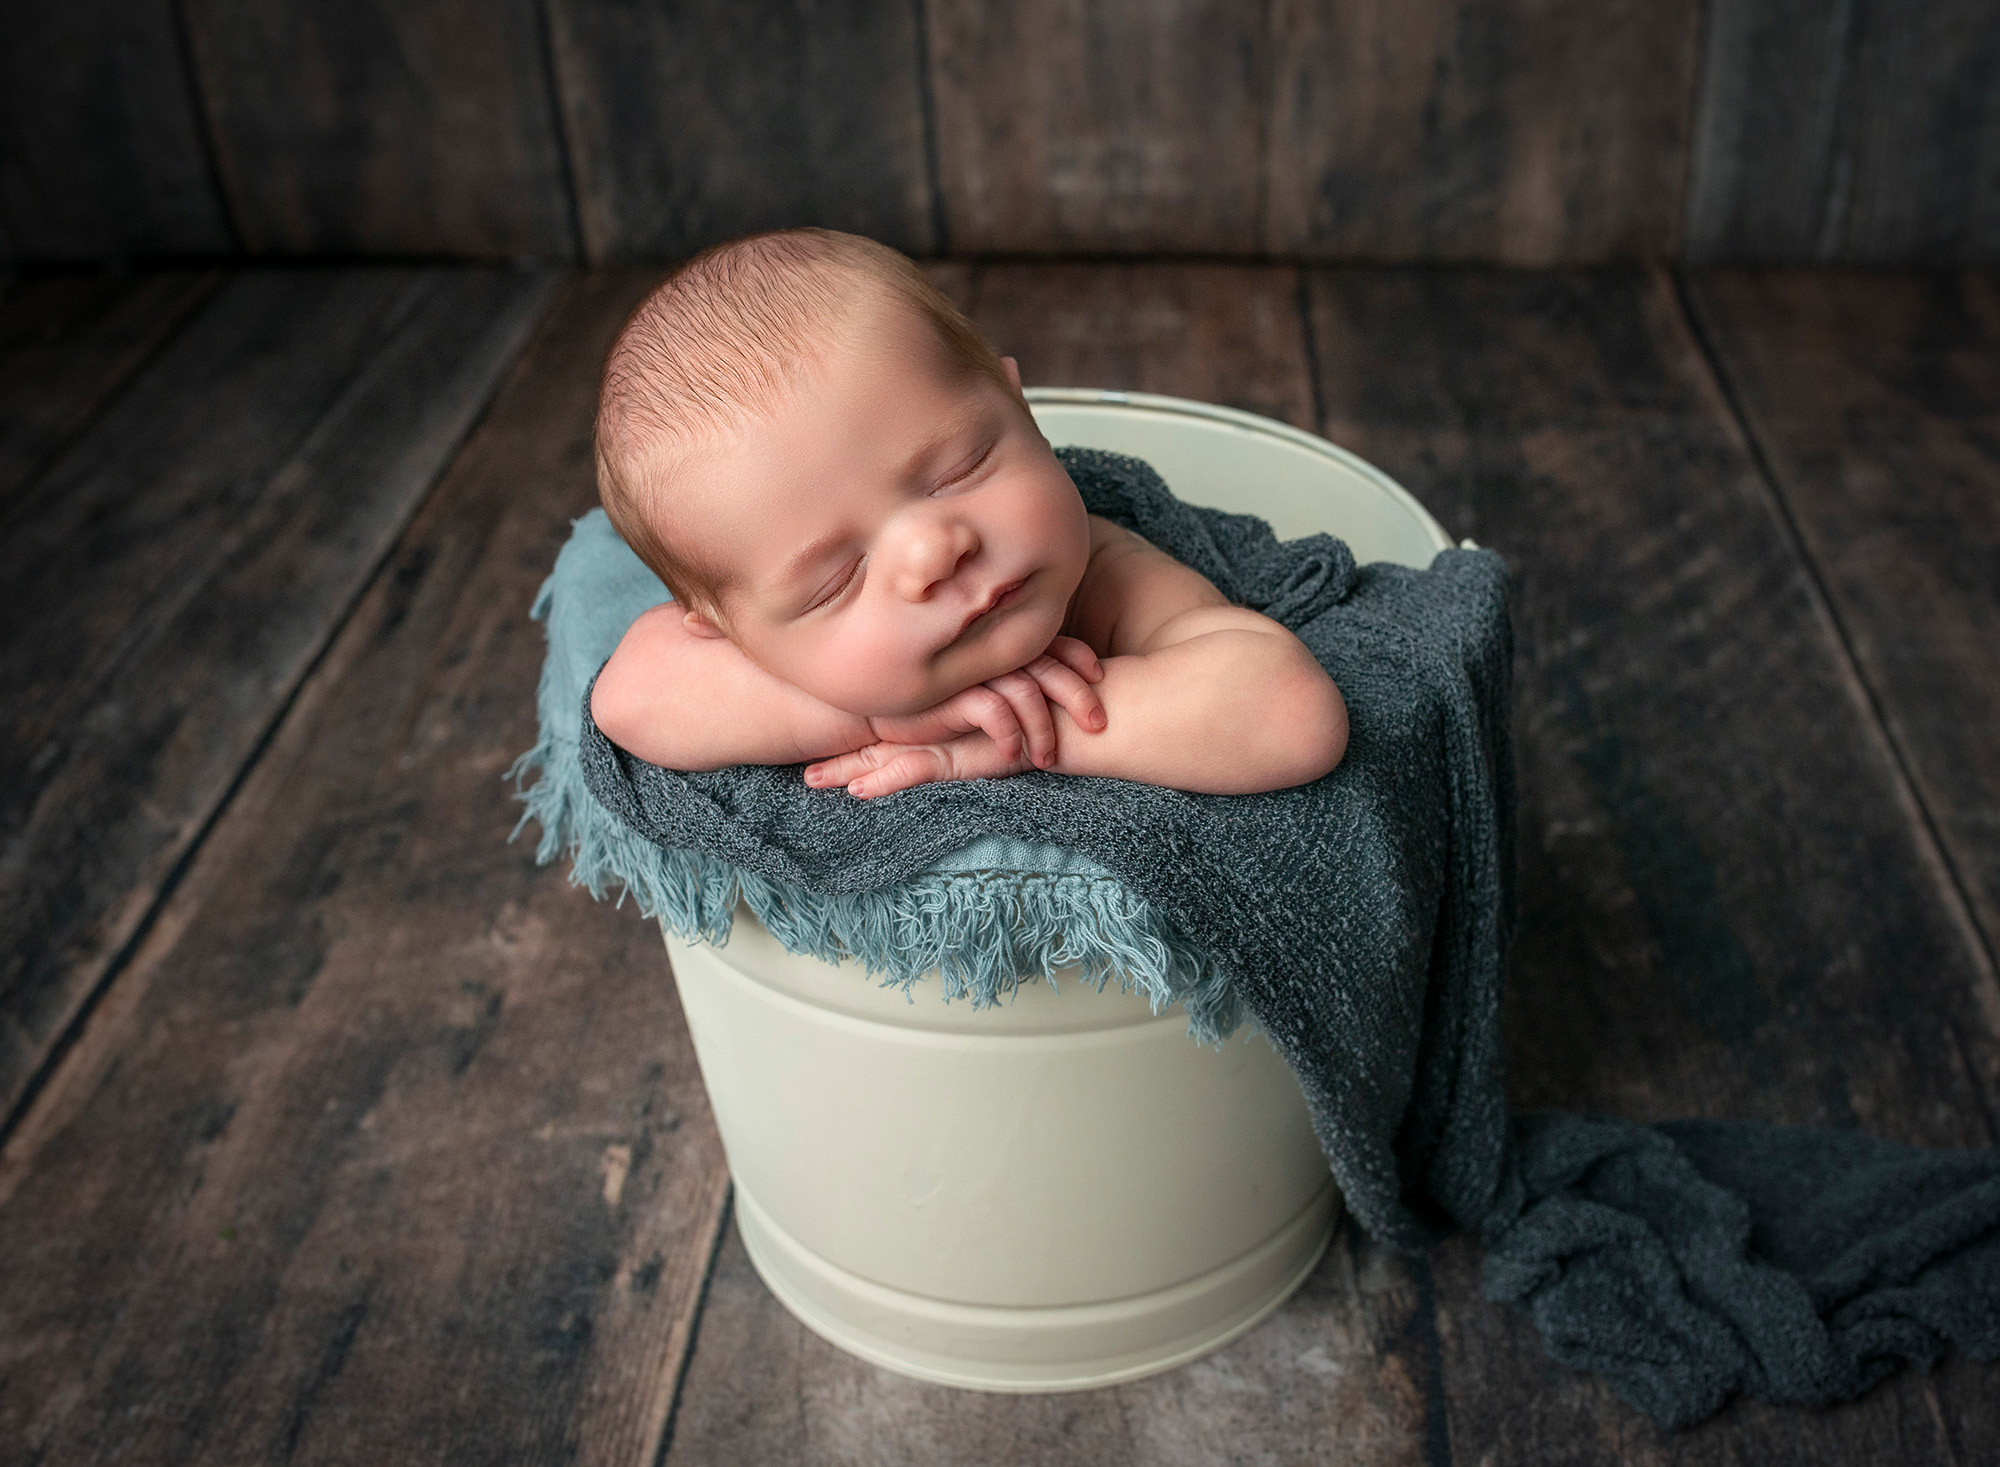 newborn baby boy asleep in white bucket with blue blankets